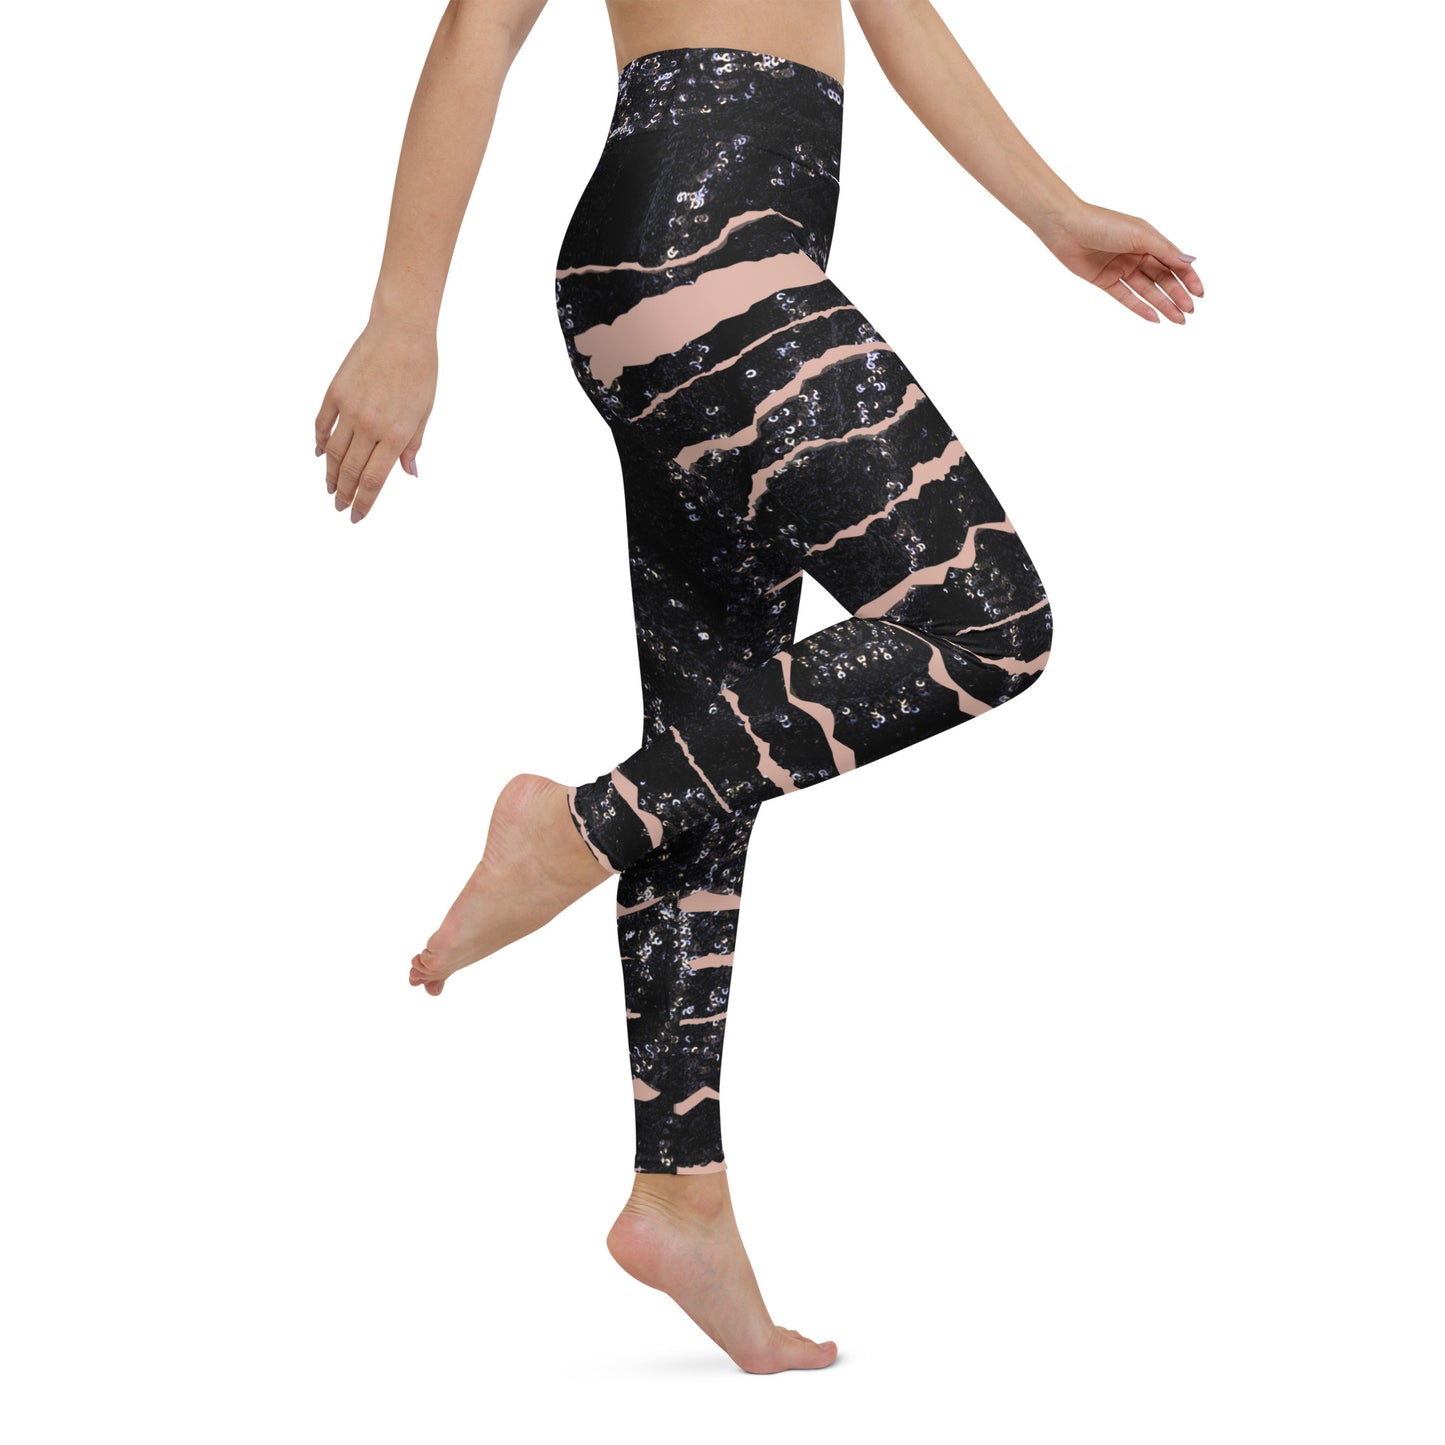 Shimmering Slits Yoga Leggings - Any Occasion Leggings, Date night leggings, rave leggings, Goth leggings